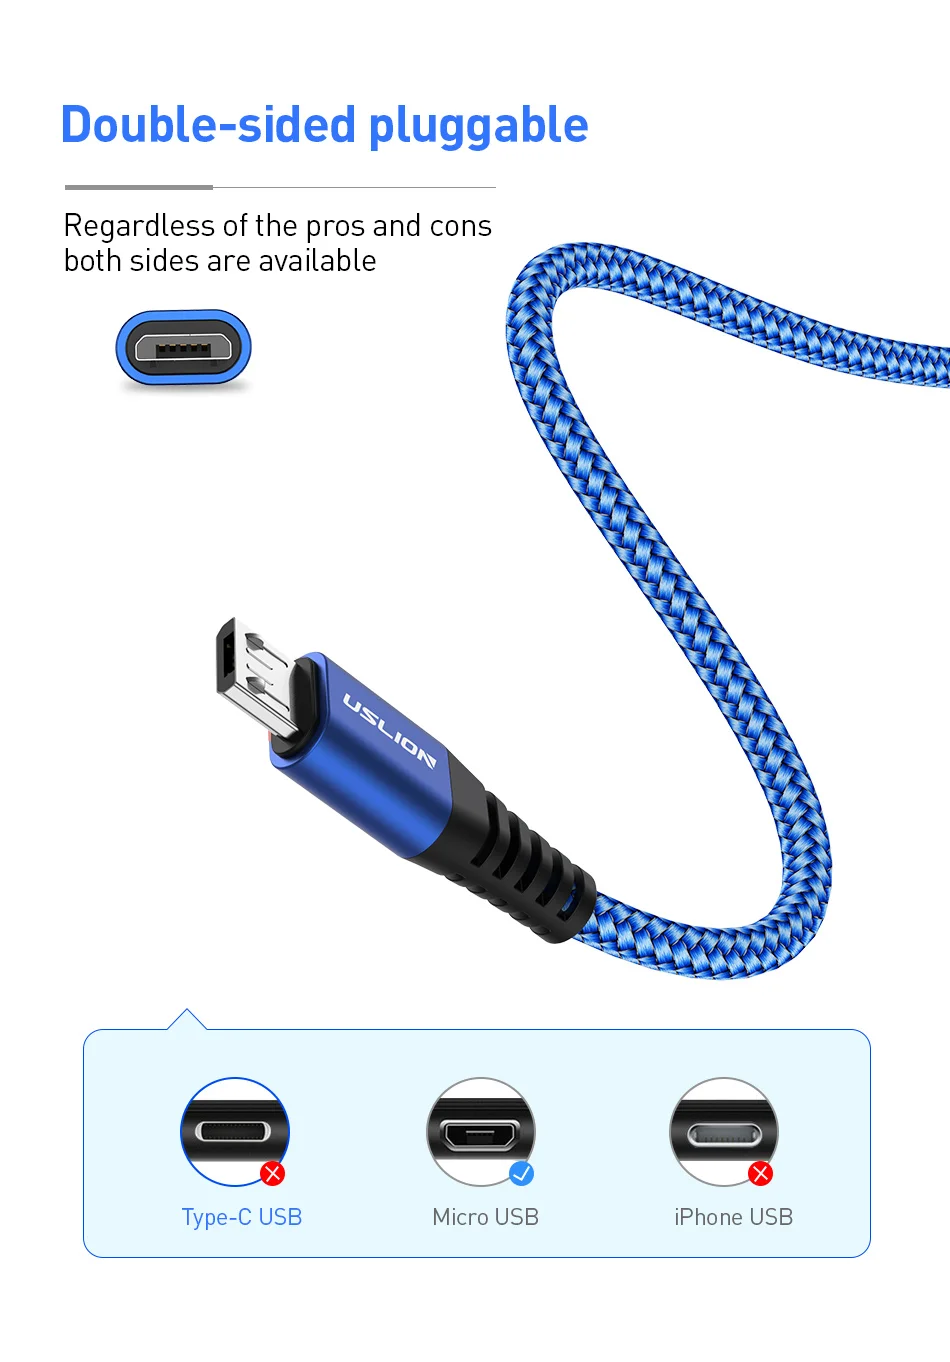 USLION 2 м Micro USB кабель для быстрой зарядки для Xiaomi Redmi Note 5 Мобильный кабель передачи данных телефона для samsung S7 Android Micro зарядное устройство